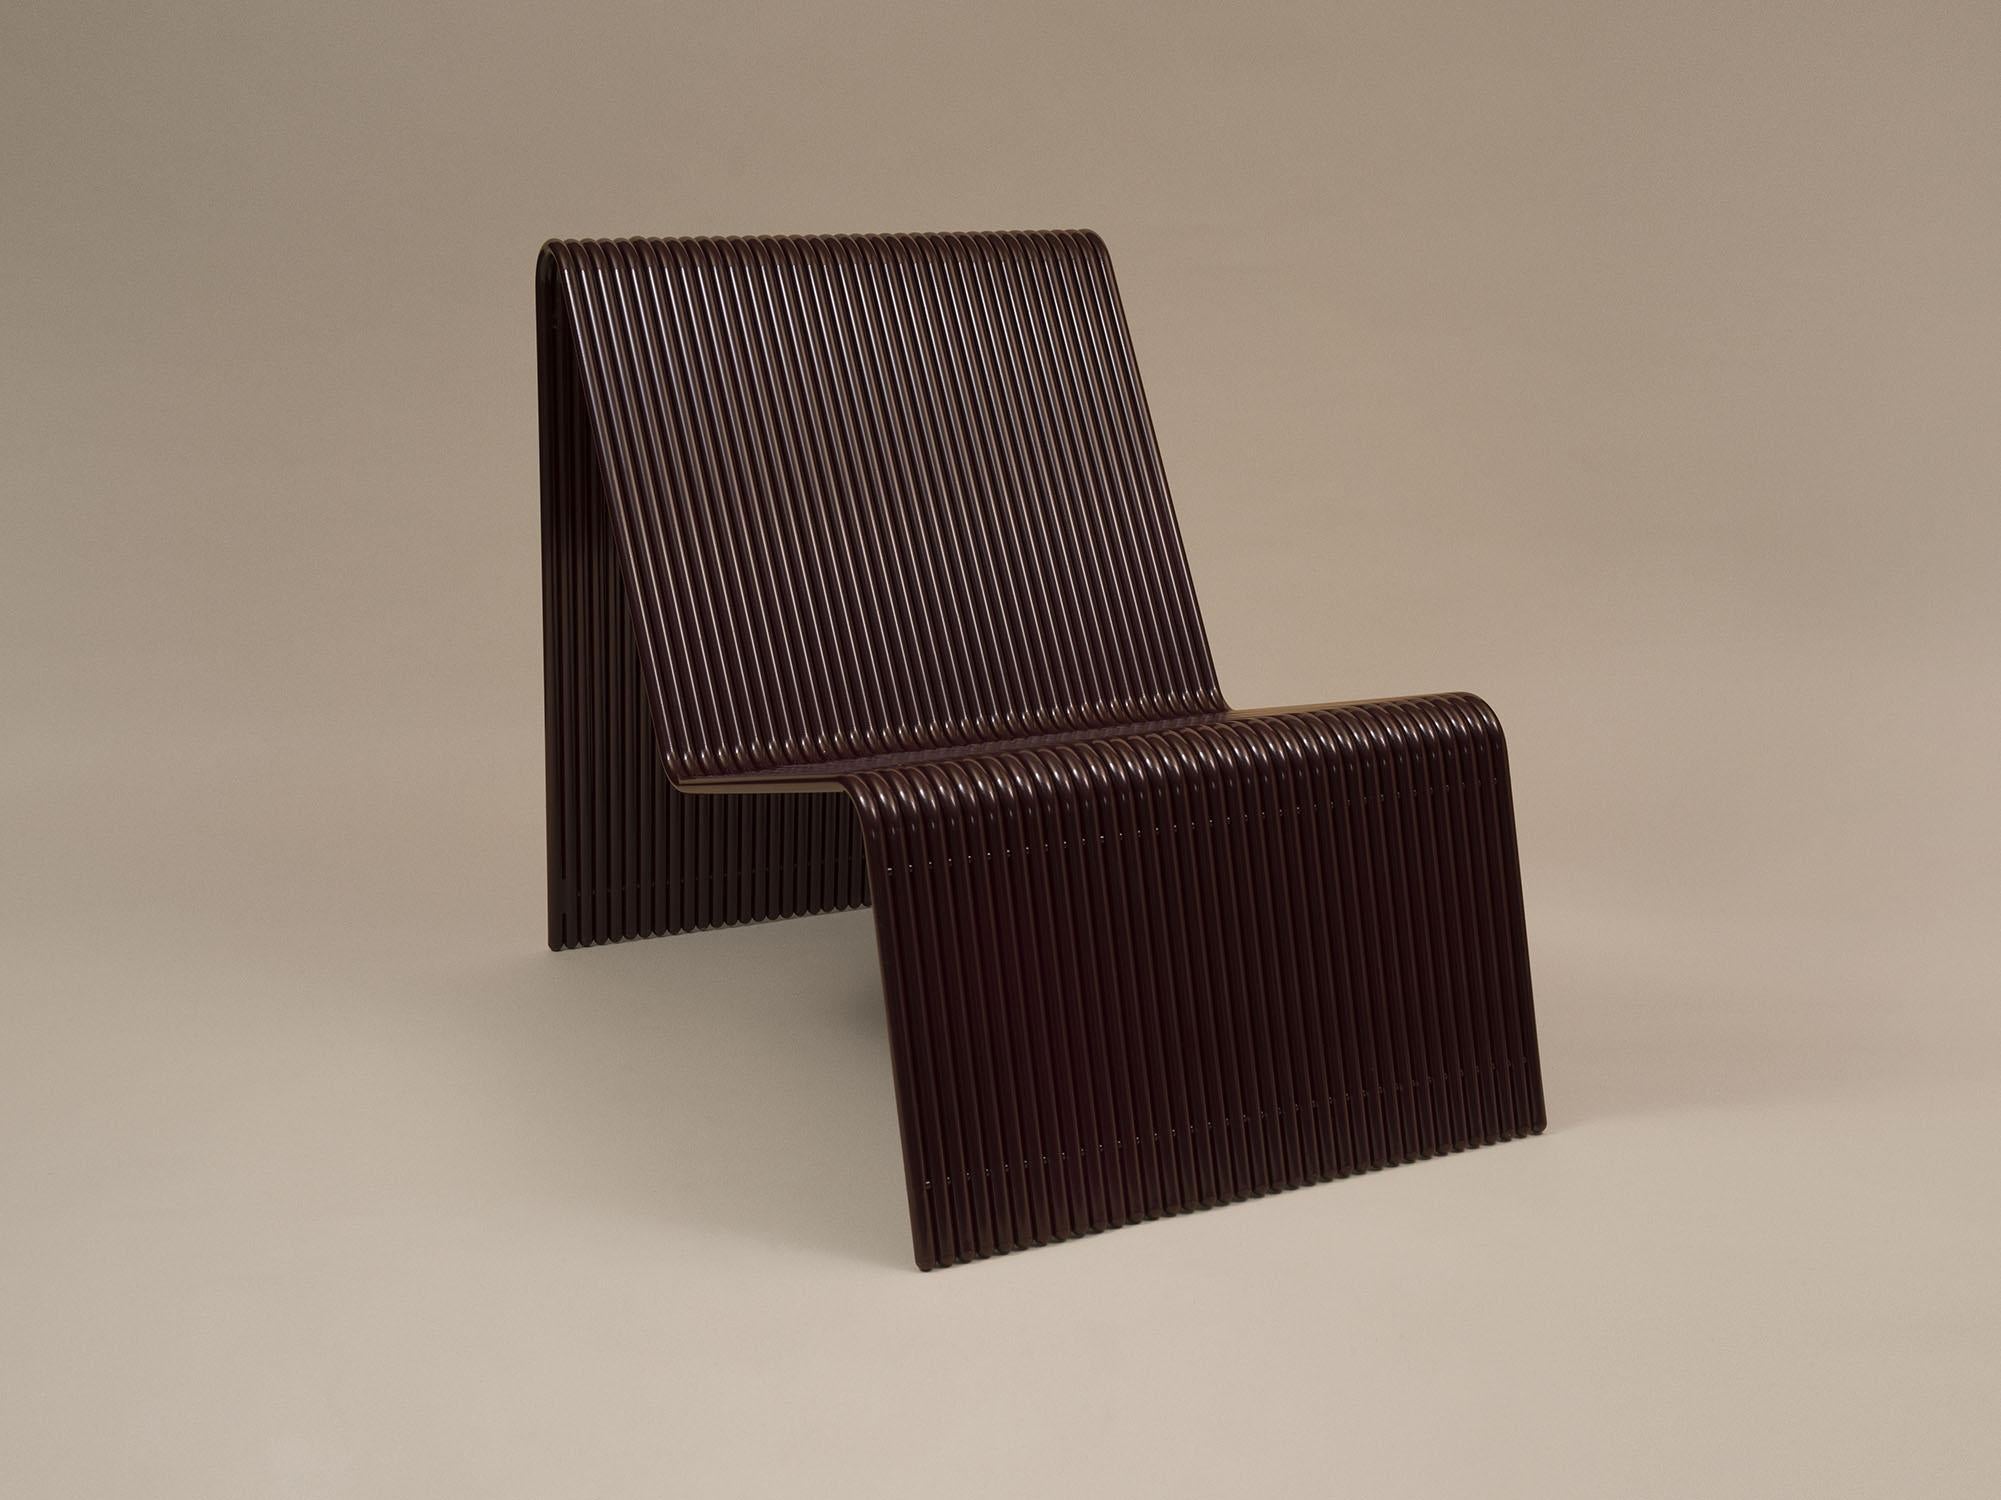 À la fois délicate et audacieuse, la chaise longue Ribbon est un ajout ludique au catalogue de mobilier d'extérieur de Laun. Les tubes d'aluminium superposés s'empilent pour former un ensemble solide et permettent des largeurs personnalisées dans